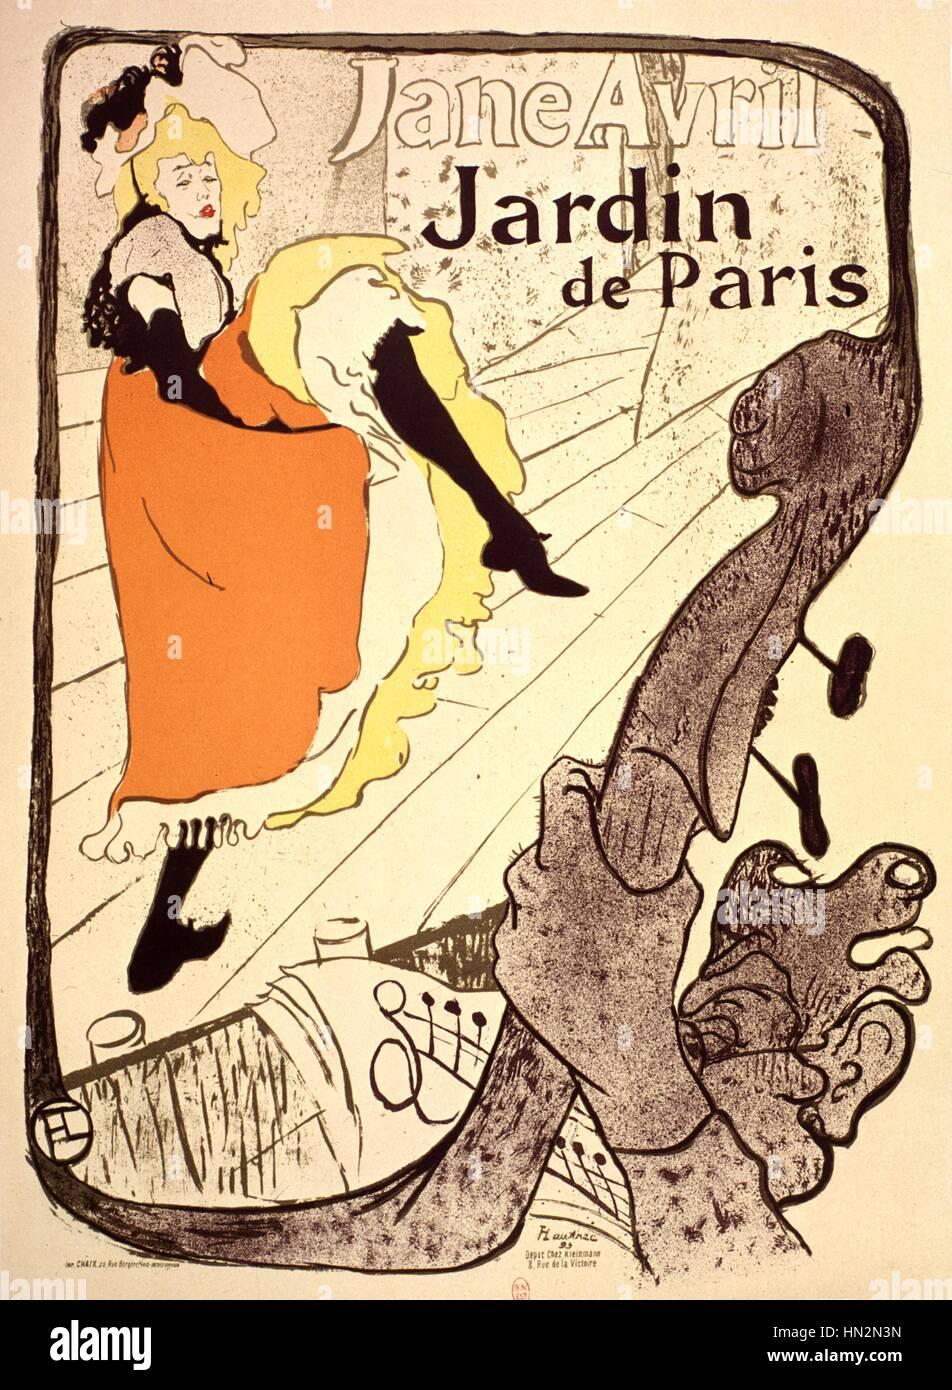 Cartel publicitario: Jane Avril en El Jardin de Paris del siglo XIX Toulouse-Lautrec Foto de stock